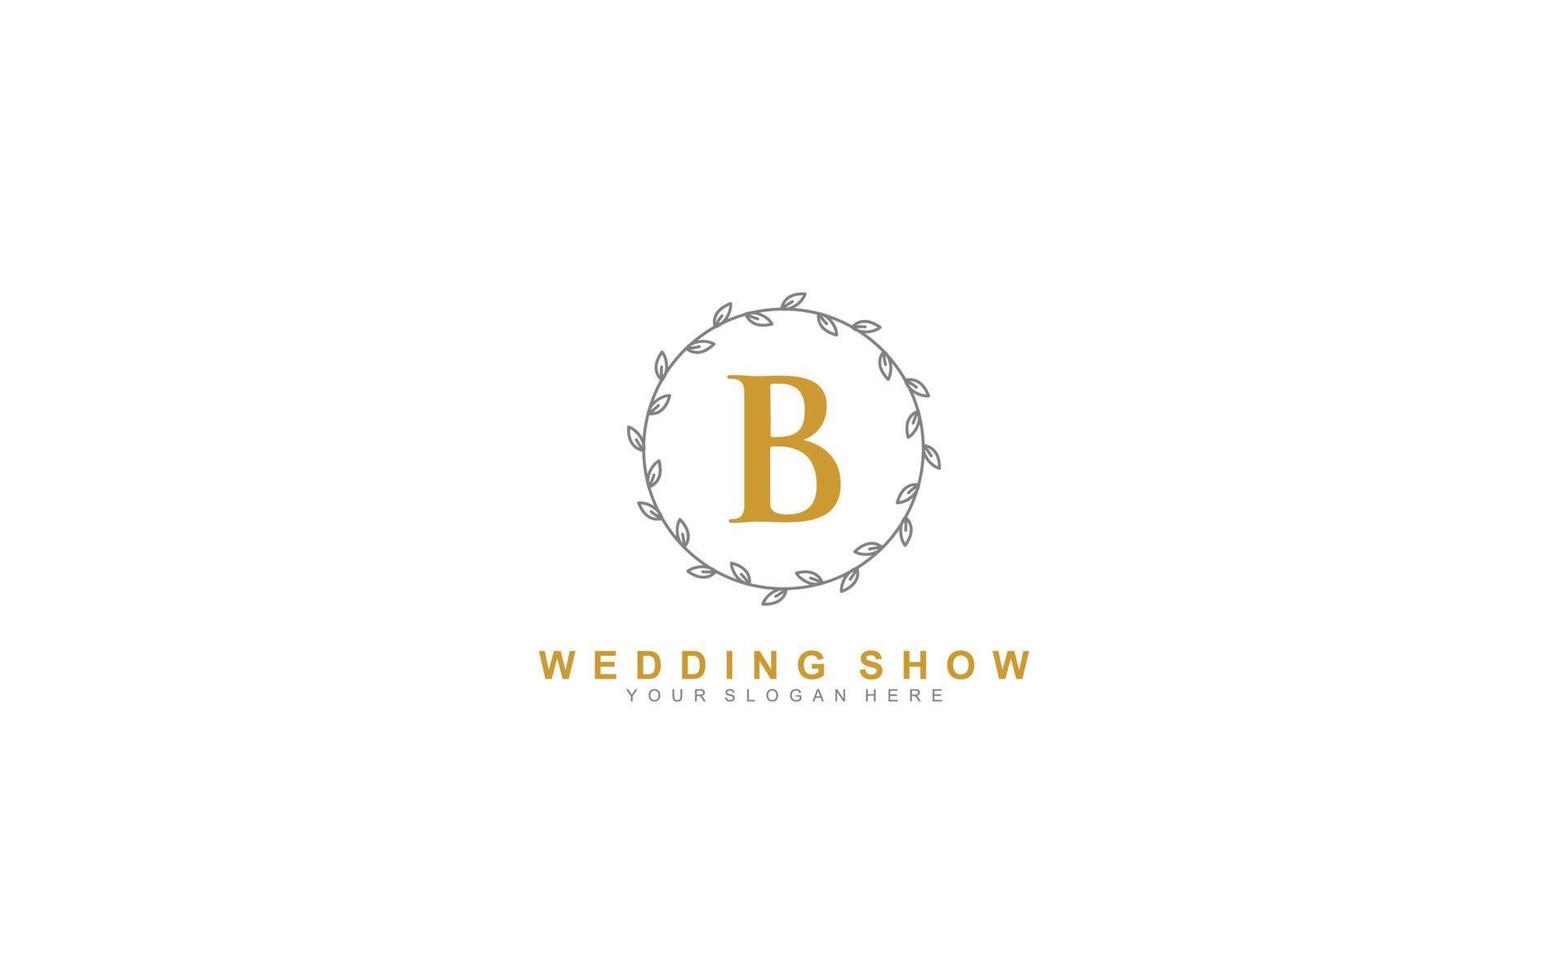 b schoonheid bloemen logo ontwerp inspiratie. vector brief bruiloft sjabloon ontwerp voor merk.